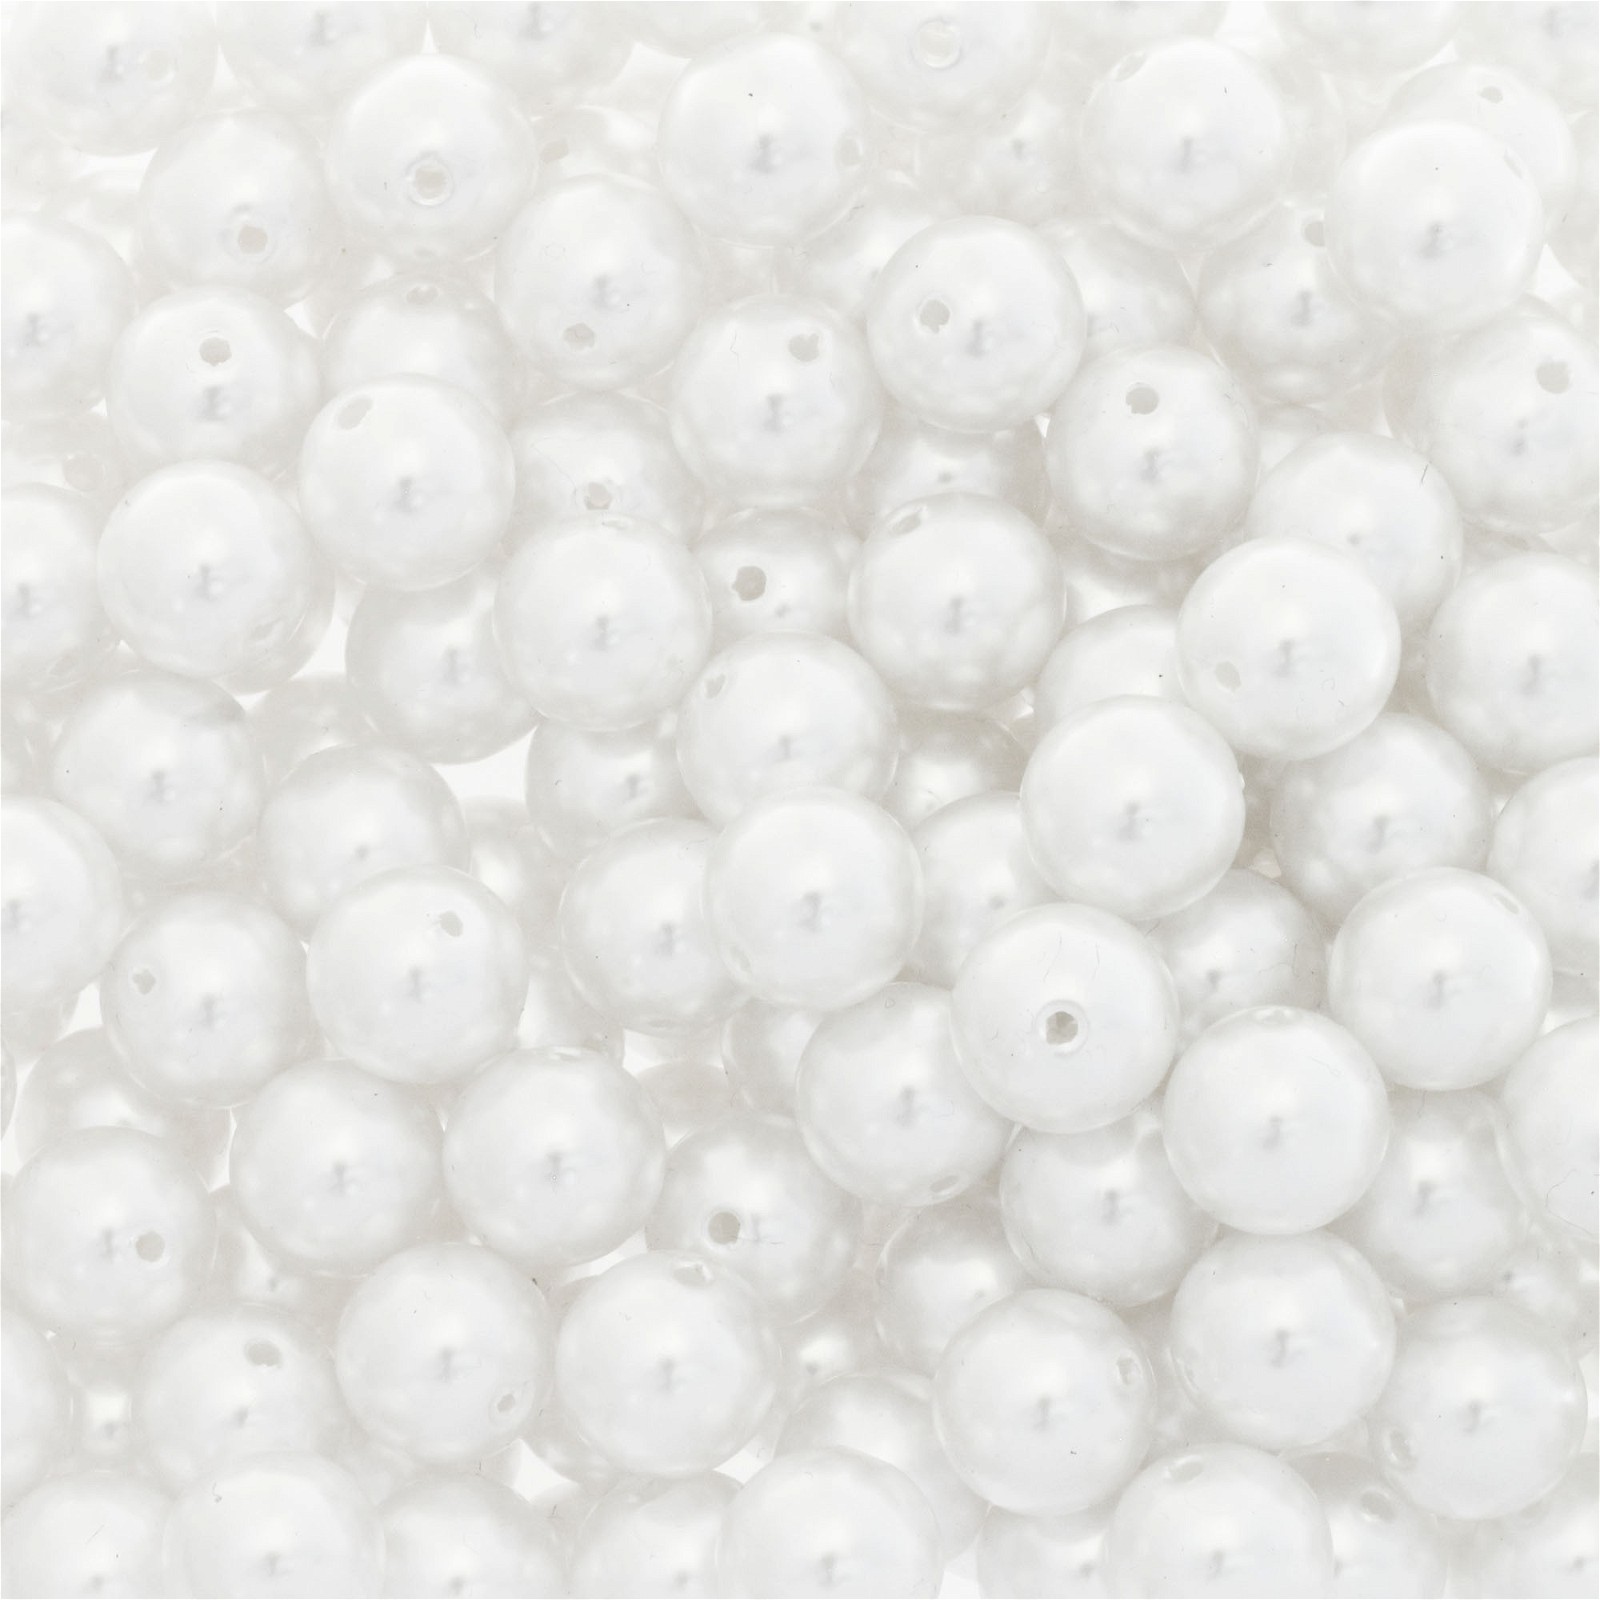 White acrylic pearls / 14mm beads 4pcs PA1402